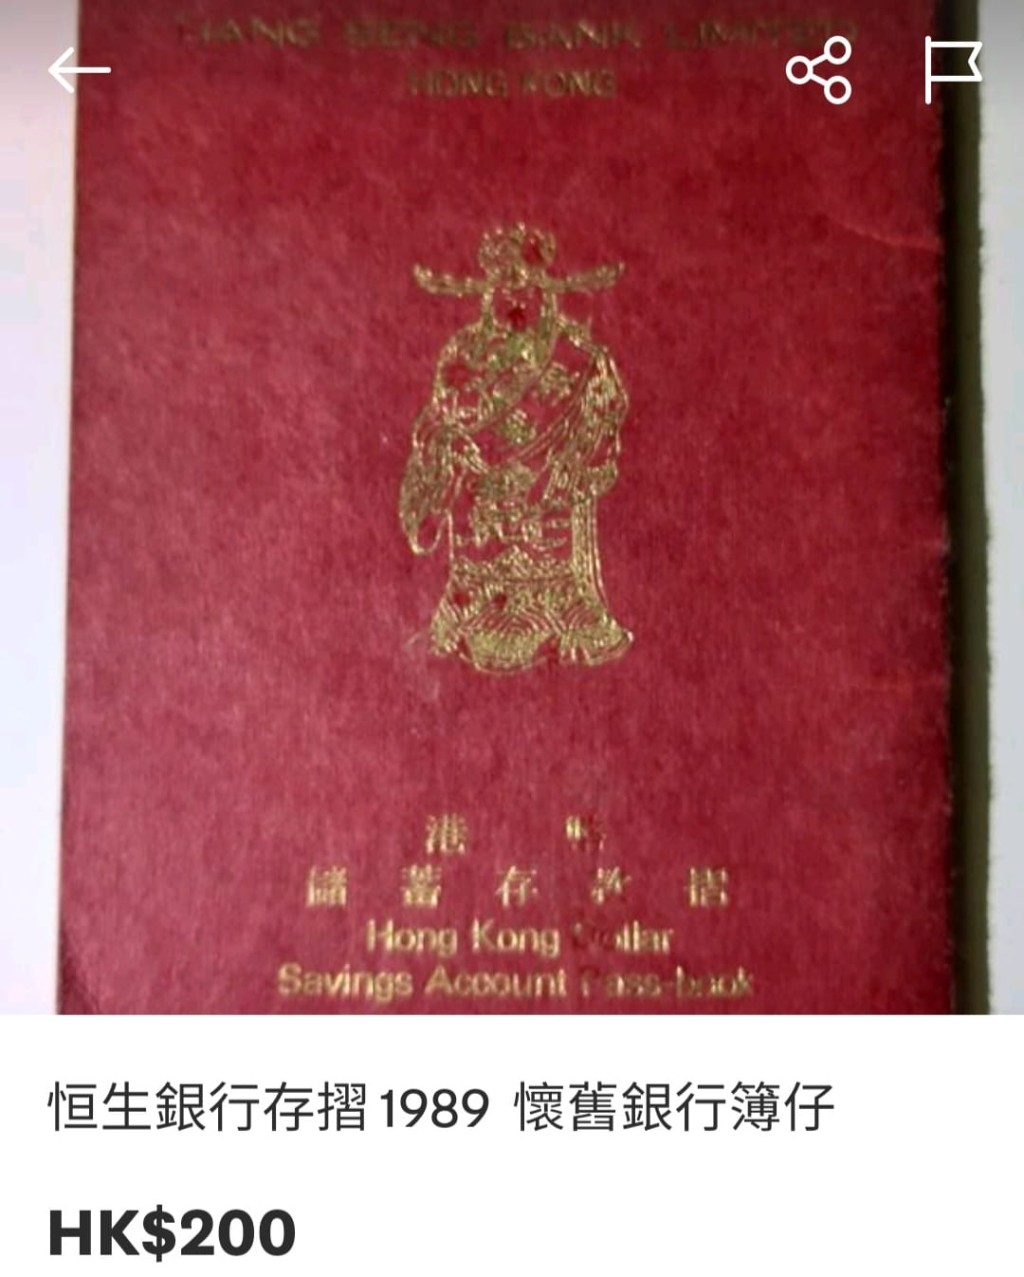 恒生的存摺，相信不少香港人舊時都有一本。